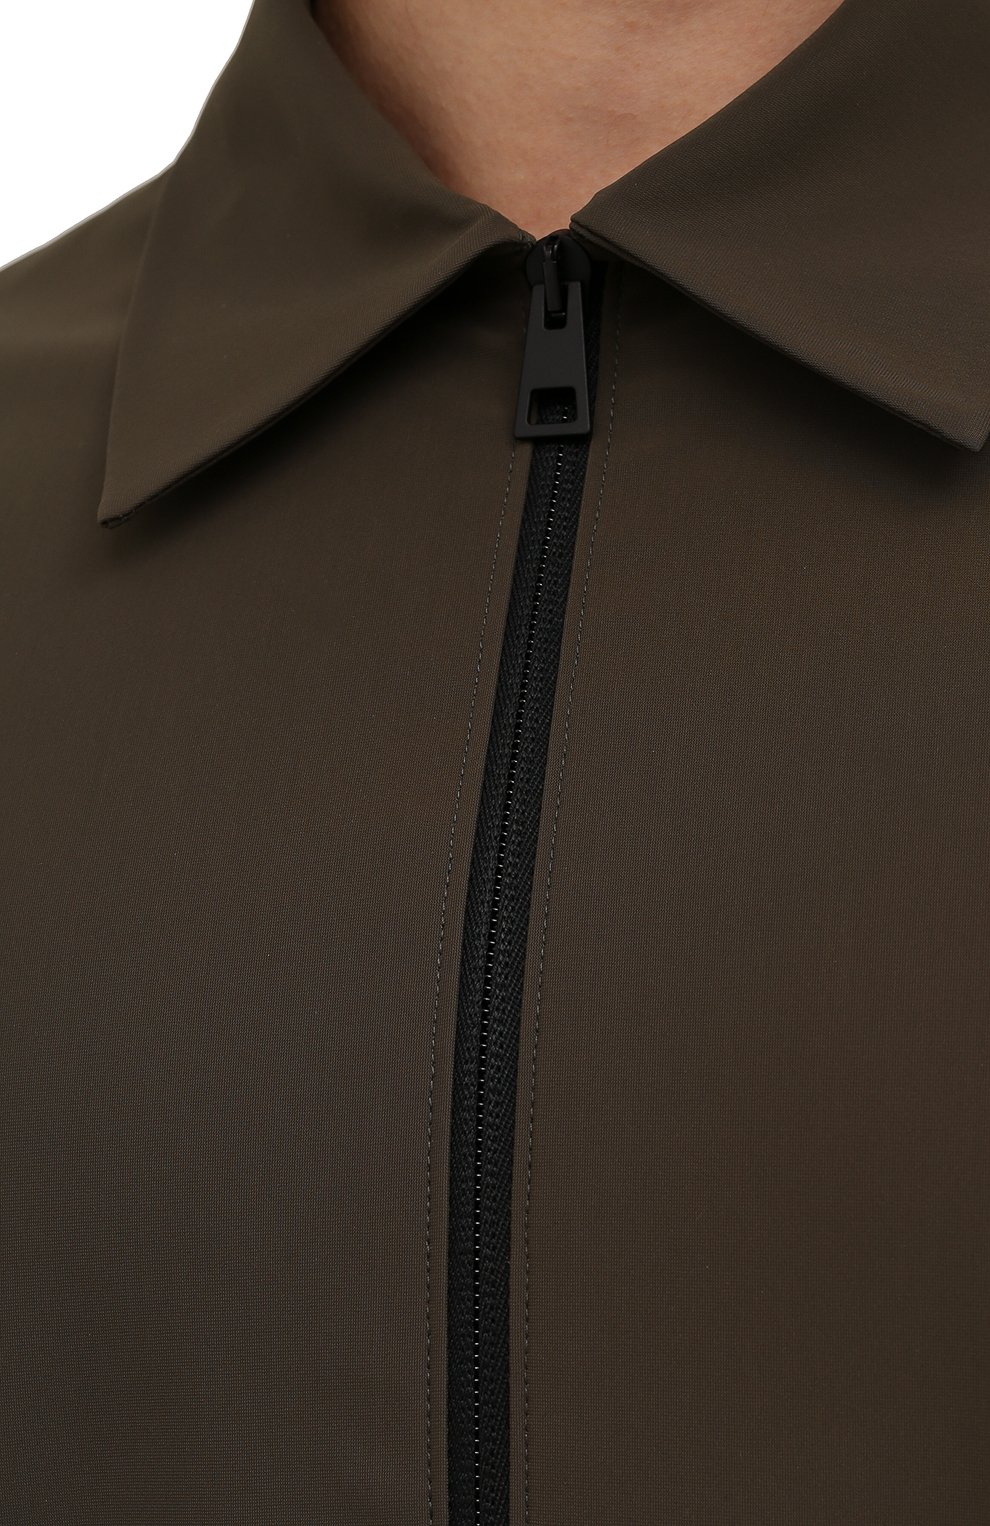 Мужская куртка HARRIS WHARF LONDON хаки цвета, арт. C9341PYZ | Фото 5 (Кросс-КТ: Куртка, Ветровка; Рукава: Длинные; Материал внешний: Синтетический материал; Стили: Милитари, Кэжуэл; Длина (верхняя одежда): Короткие)